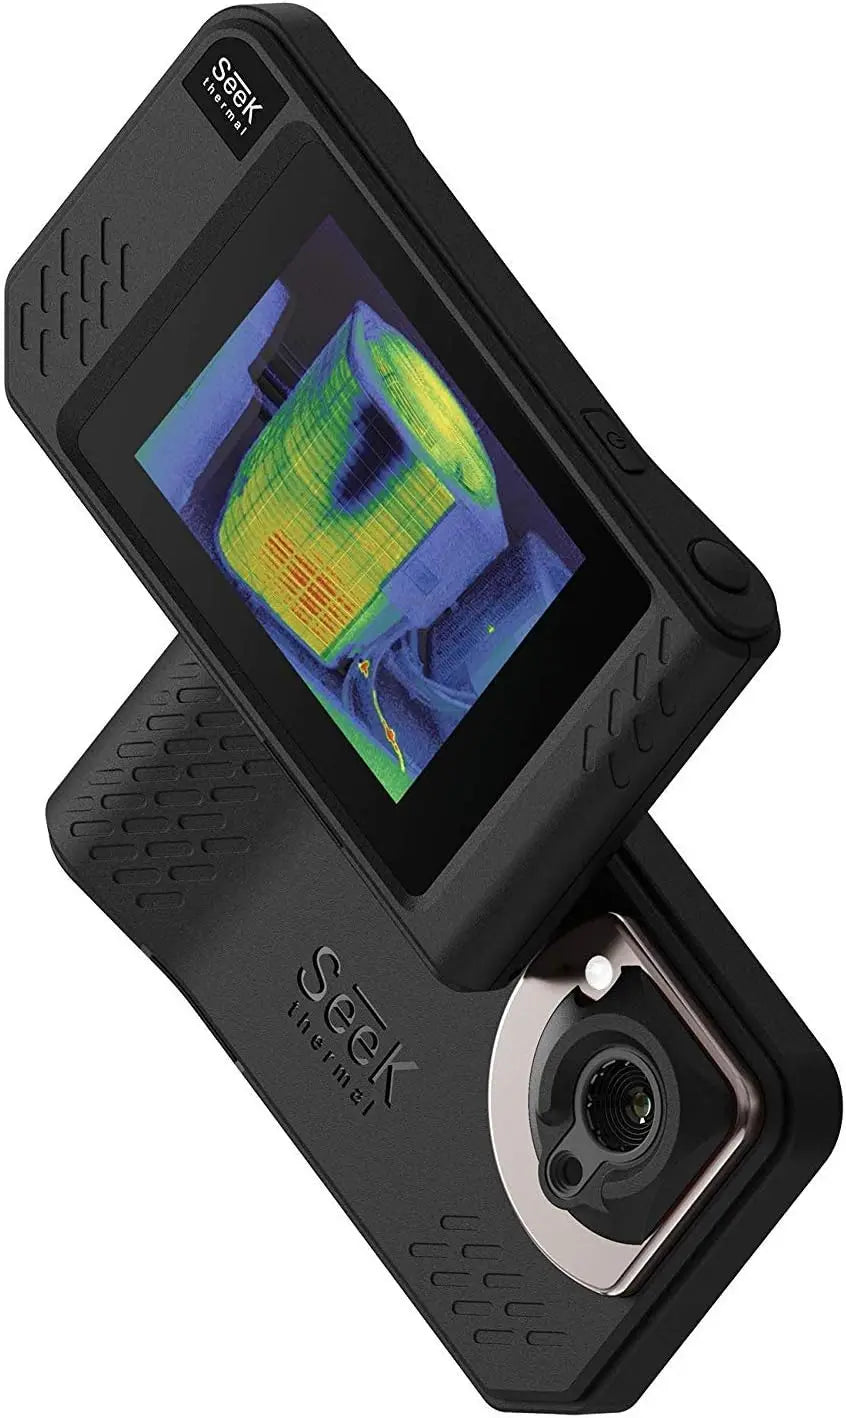 Seek Shot Thermal Imaging Camera: All-Purpose Tool for Precision Imaging